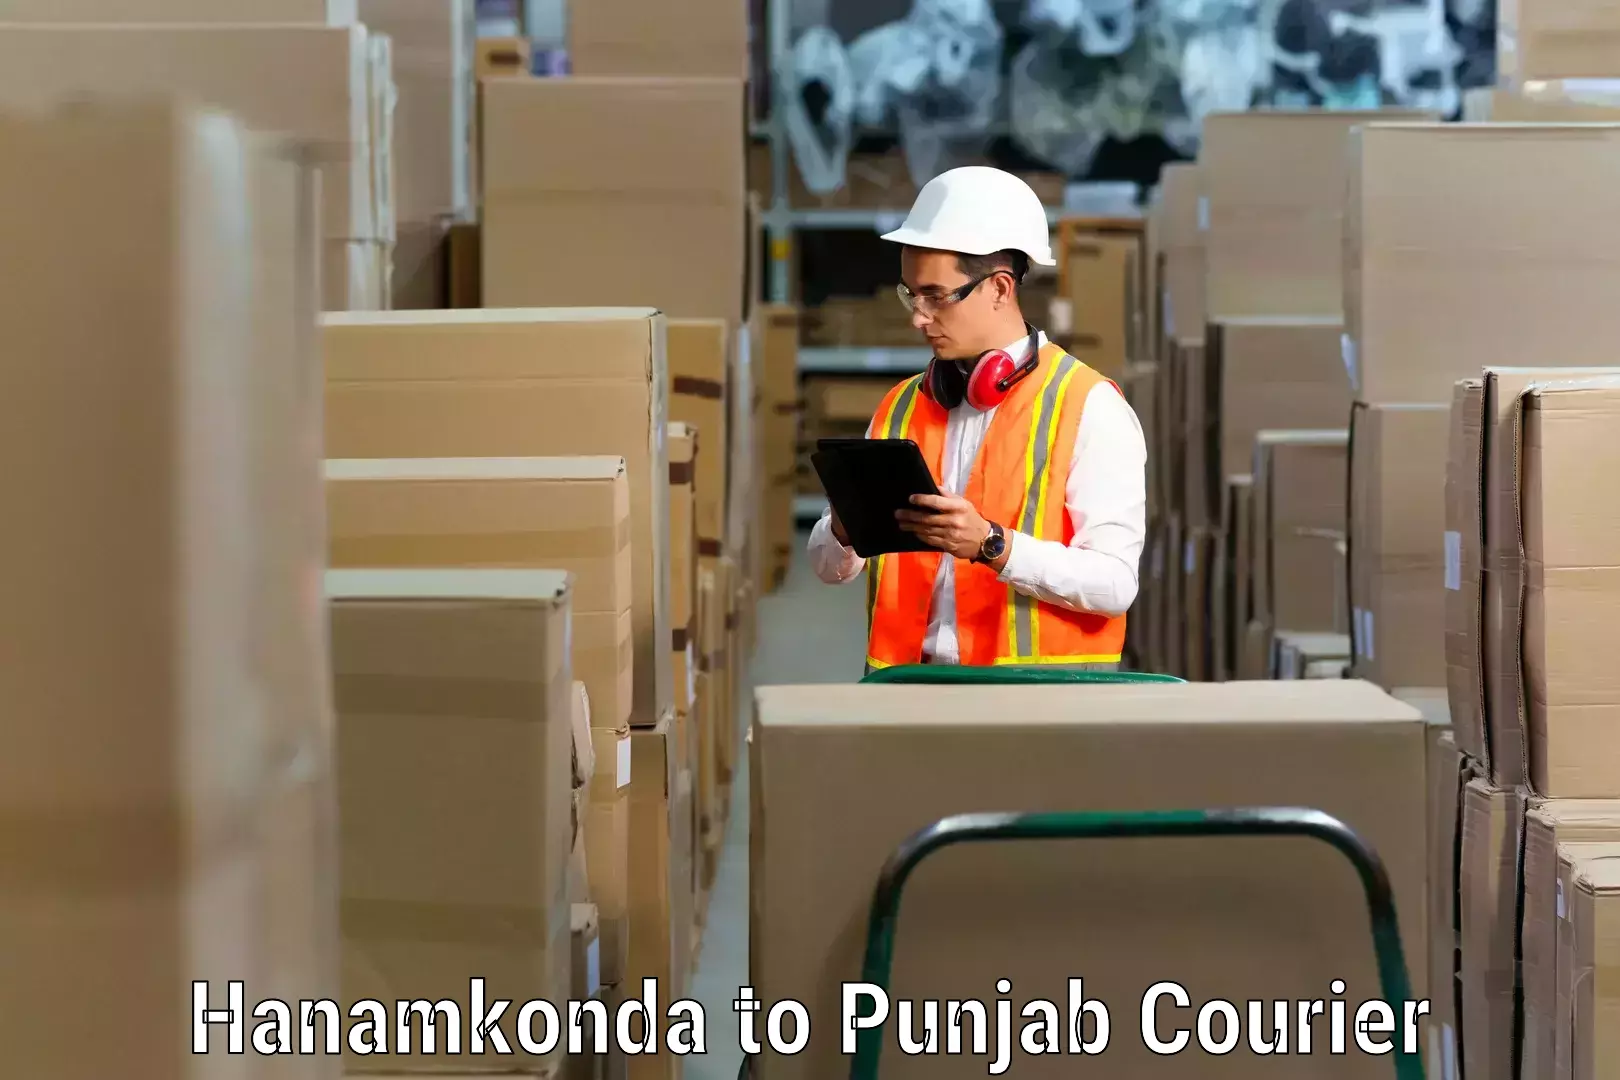 Professional moving company Hanamkonda to Central University of Punjab Bathinda